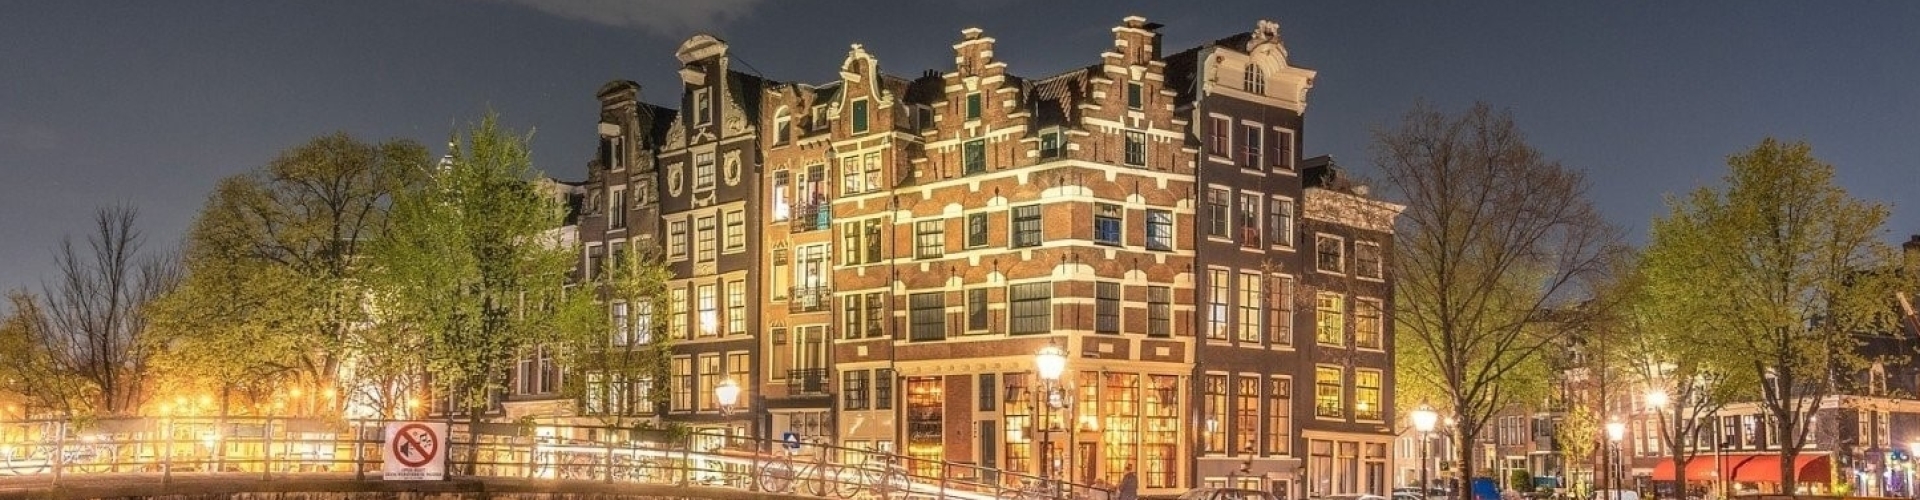 Vastgoed Amsterdam